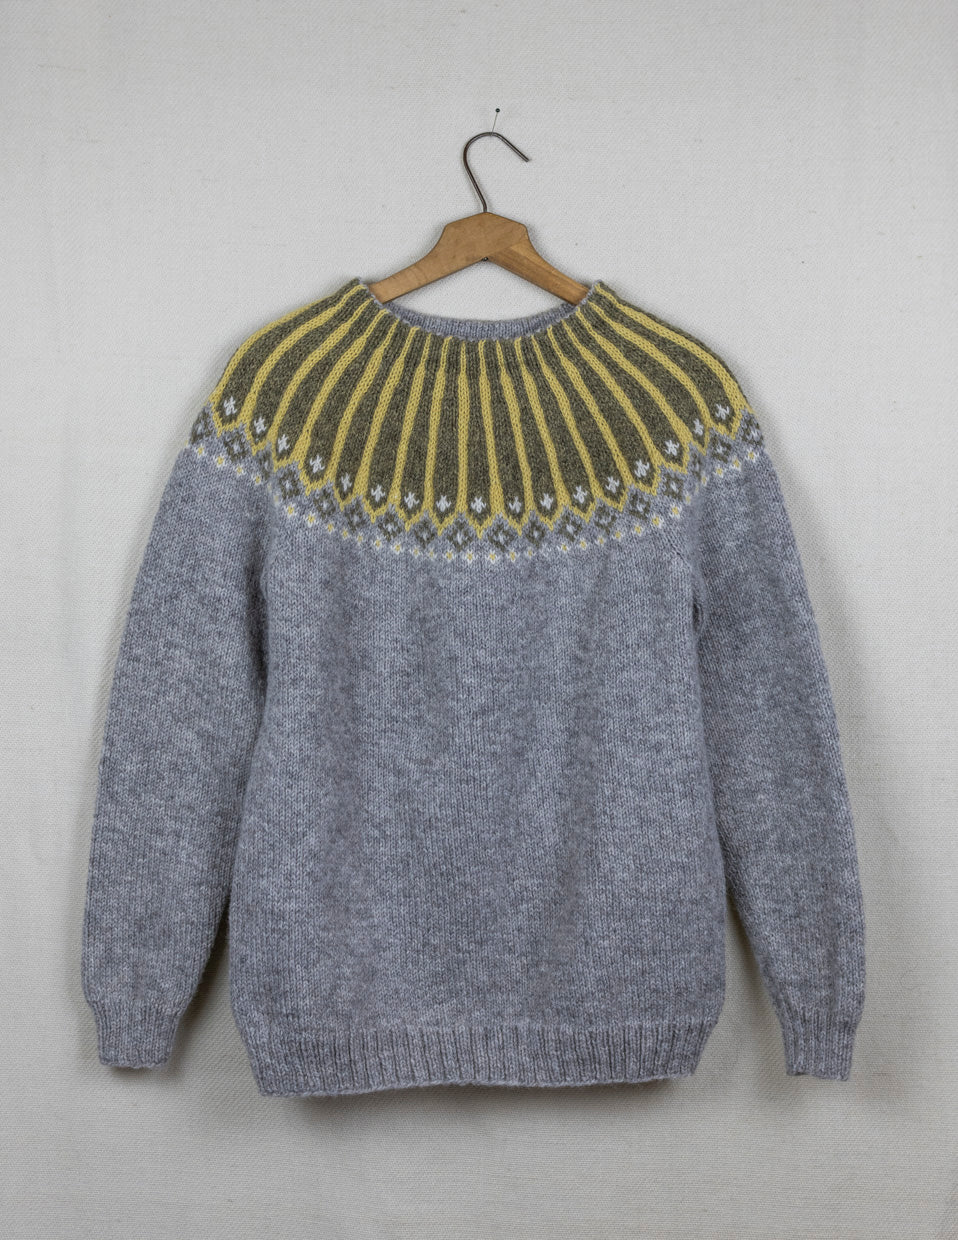 TURID genser, Steingjerde med plantefarger, strikkepakke